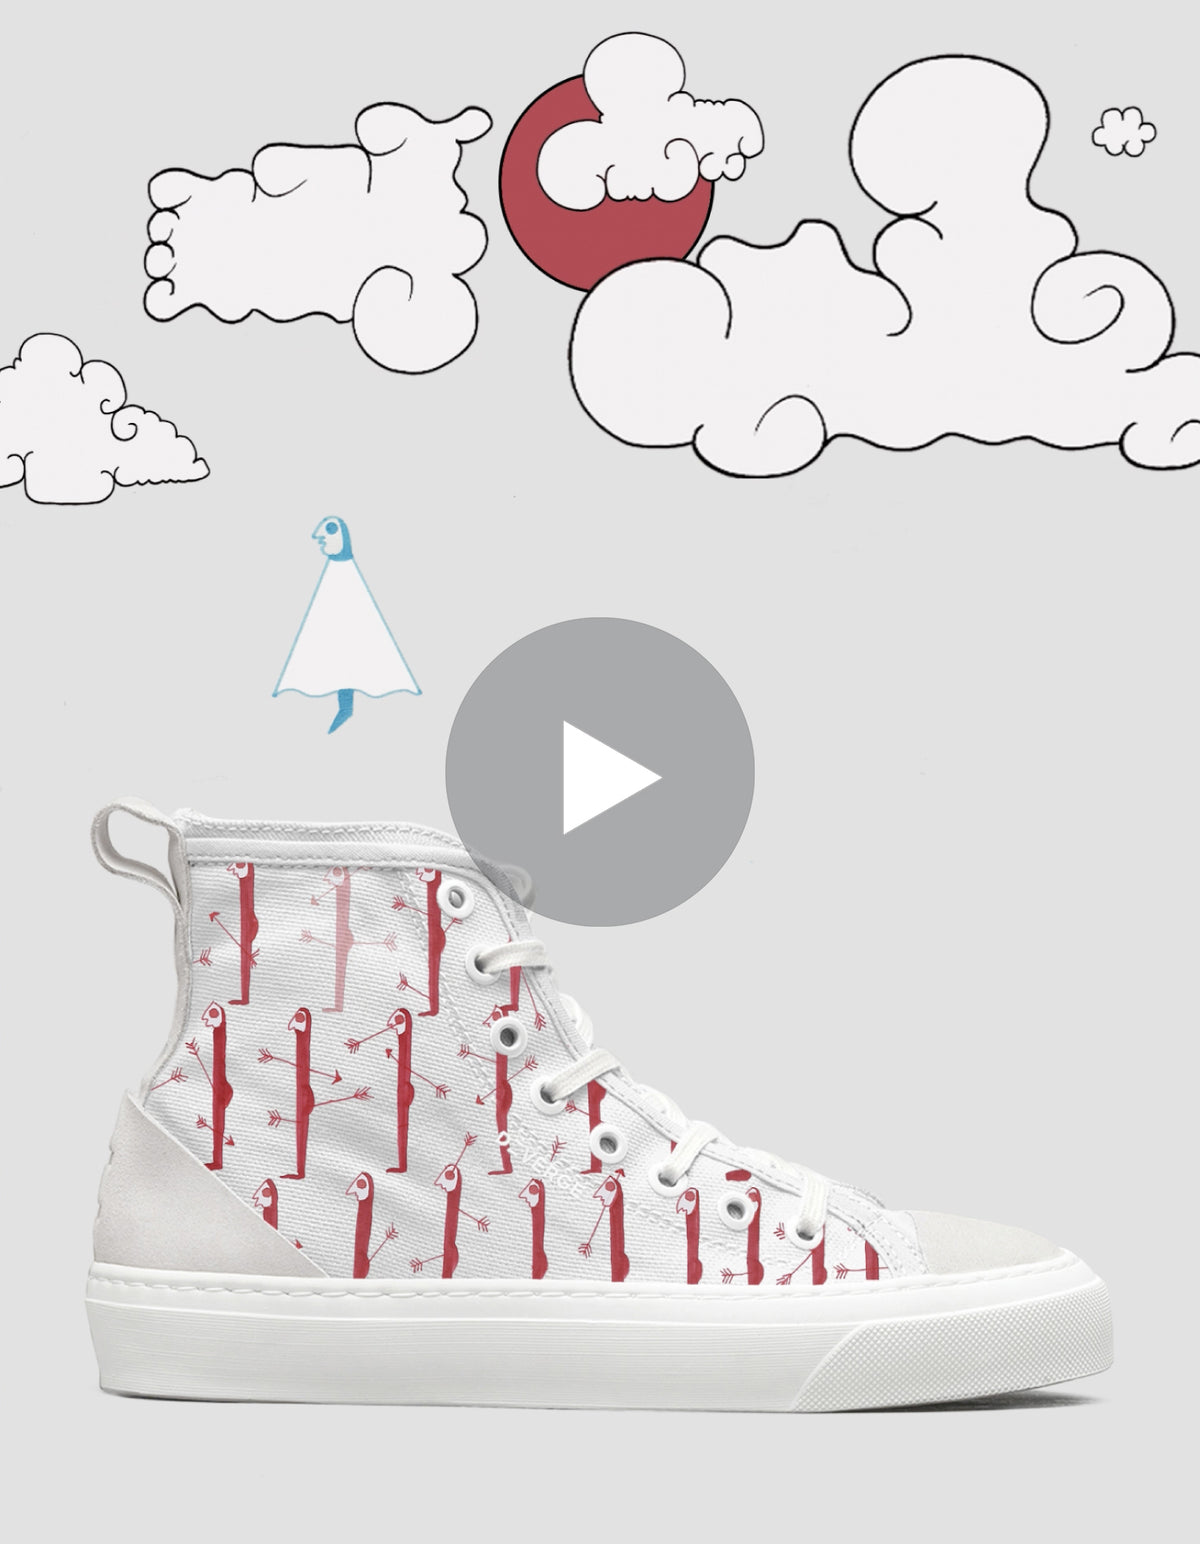 Ein digitales Bild mit einem weißen High-Top-Sneaker mit roten Schnürsenkeln und Ankermustern vor einem verspielten Hintergrund mit Wolken und einem Vogel im Doodle-Stil. Ein Play-Button-Symbol befindet sich in A Blissful Death 3/5.